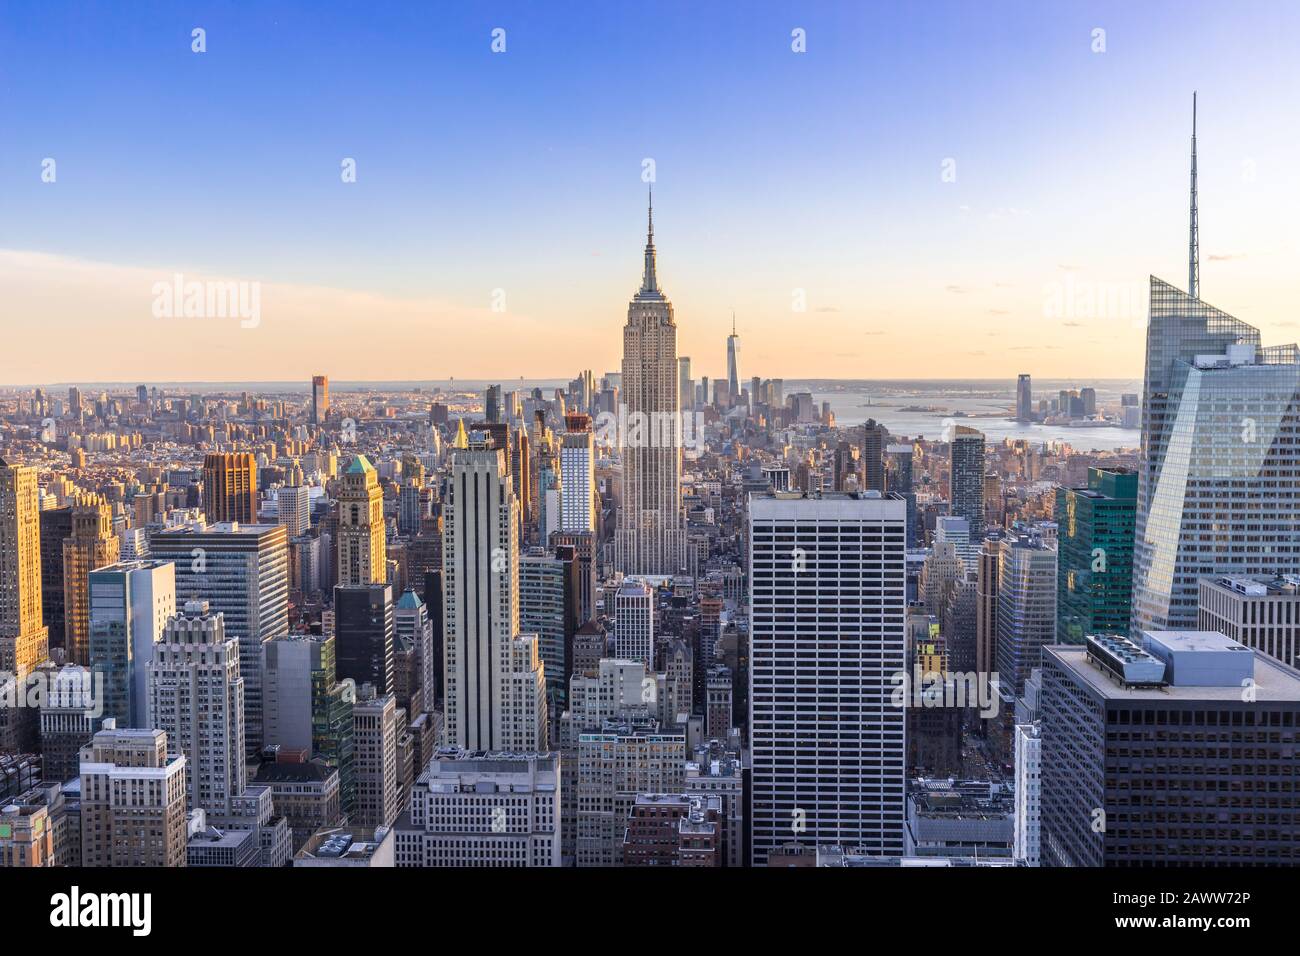 Skyline de la ciudad de Nueva York en el centro de Manhattan con Empire State Building y rascacielos al atardecer en EE.UU Foto de stock